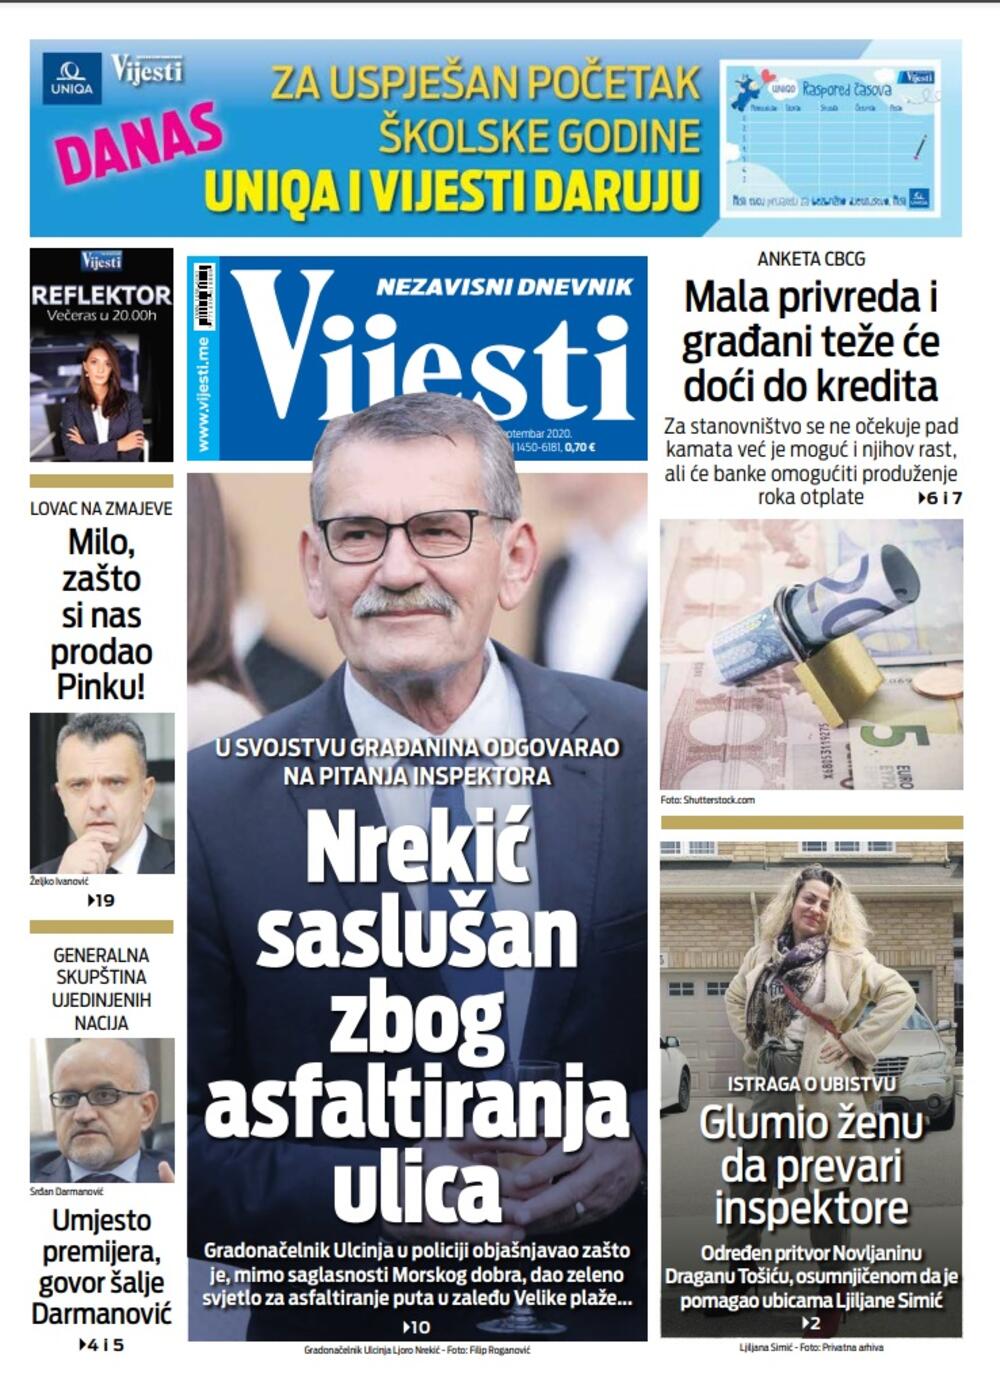 Naslovna strana "Vijesti" za 29. septembar 2020. godine, Foto: Vijesti